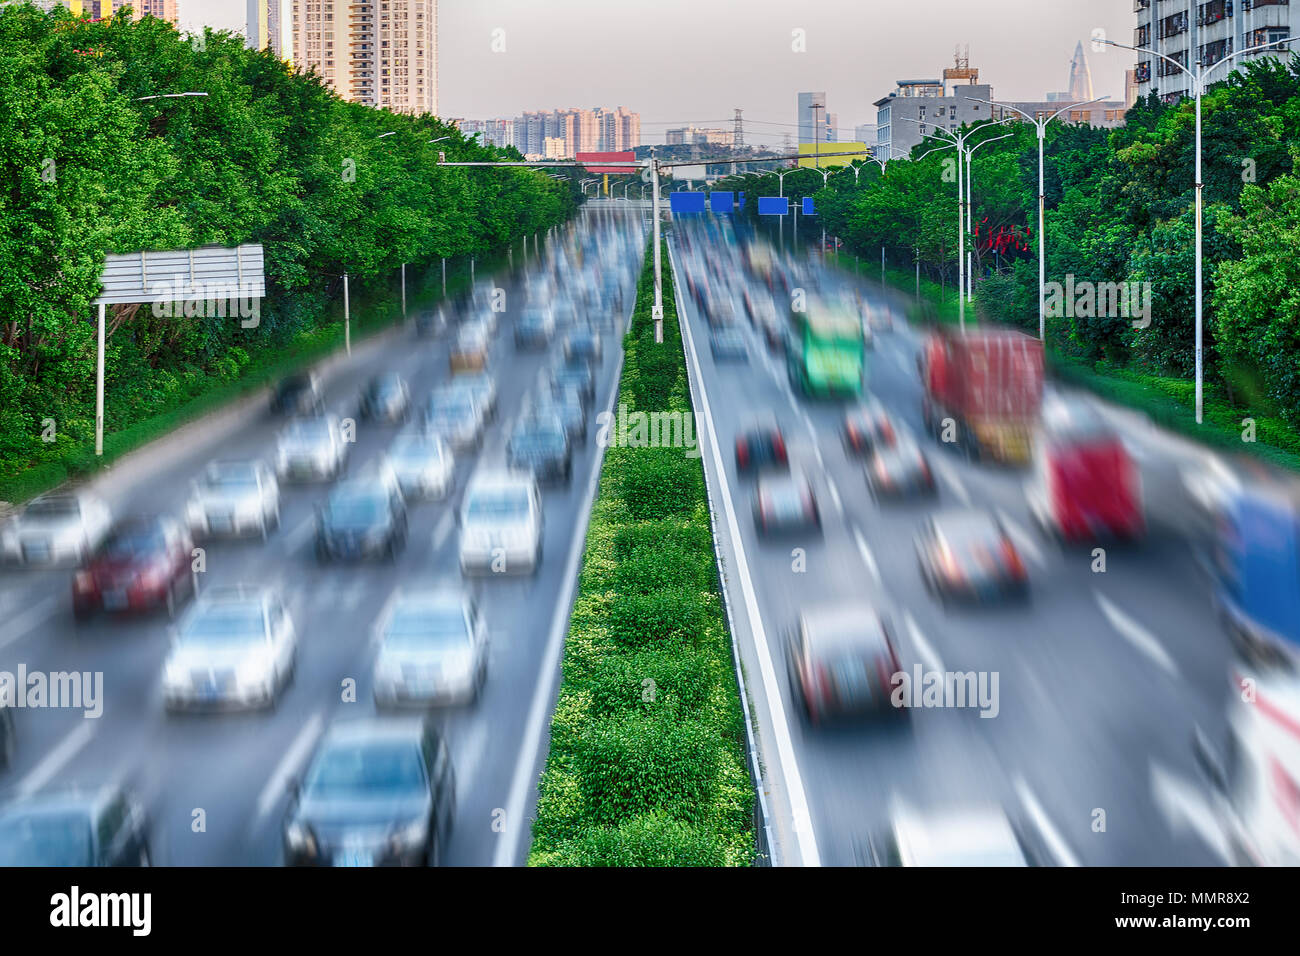 Konzept der Wechselwirkung zwischen Natur und Technik - grüne Bäume und grüne Linie entlang einer befahrenen Straße Umwelt schützen. Autos sind auf der Autobahn. Stockfoto